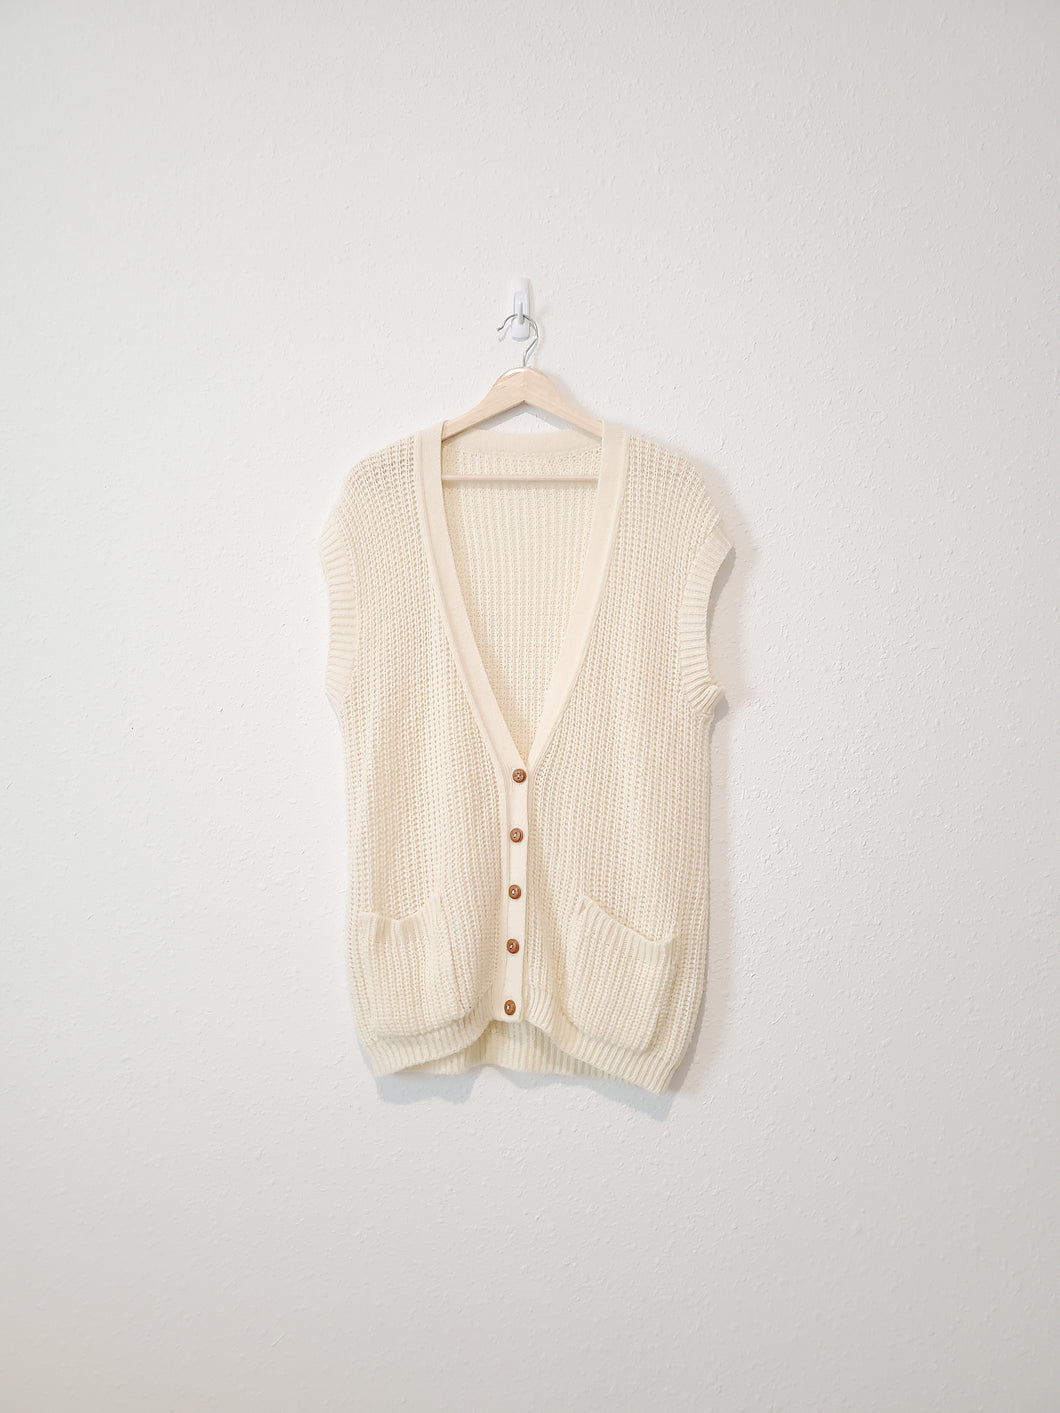 Vintage Button Up Sweater Vest (L/XL)